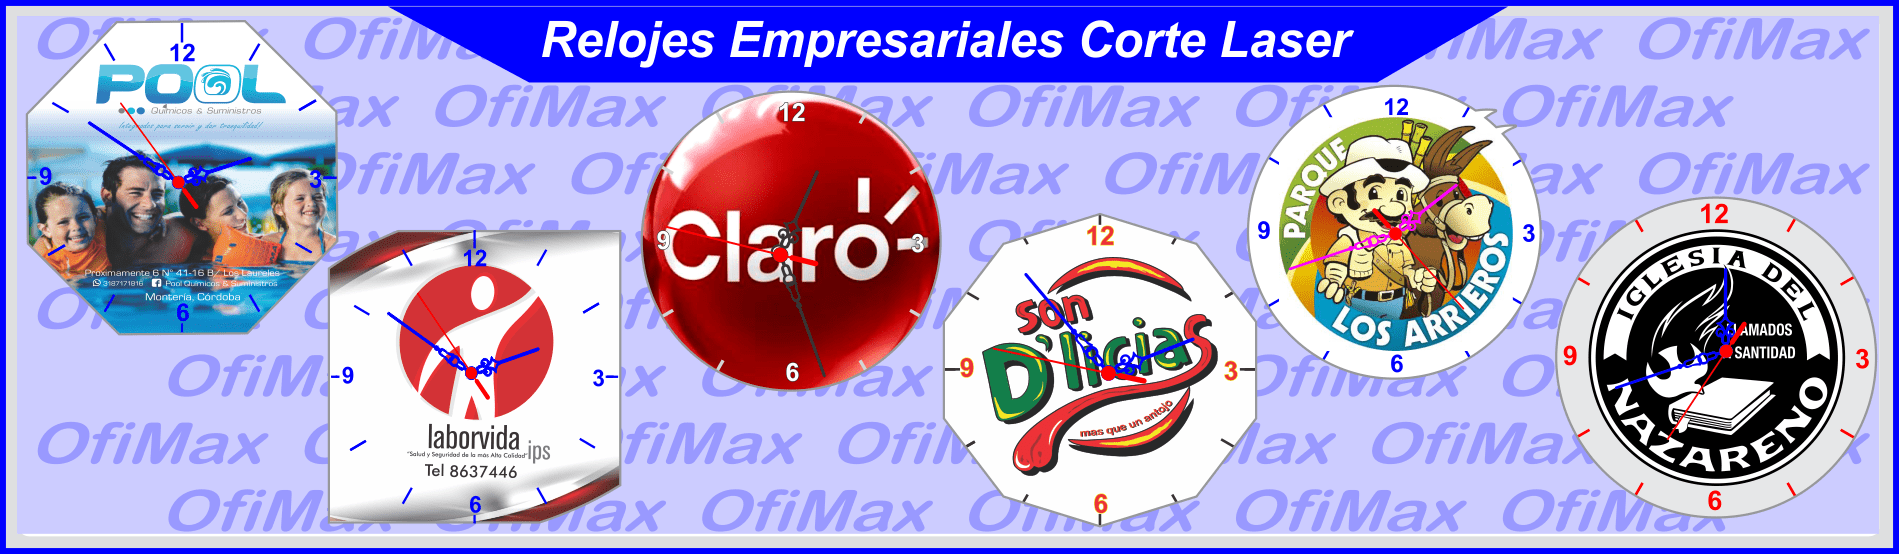 relojes publicitarios para empresas en acrilico muestras, bogota, colombia